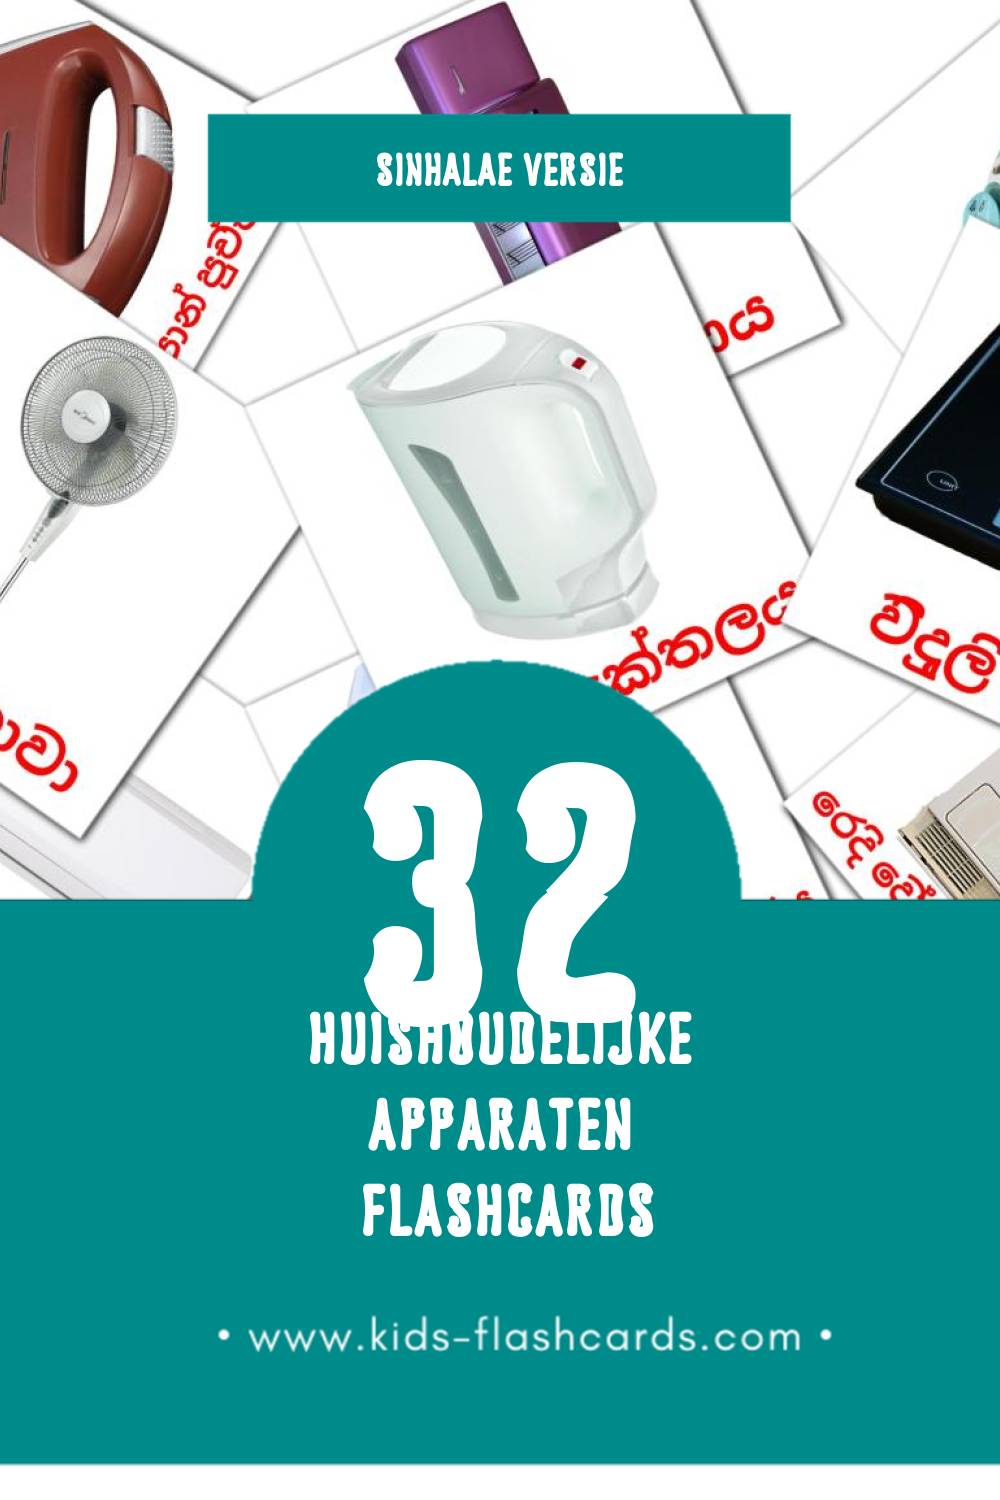 Visuele ගෘහ භාණ්ඩ Flashcards voor Kleuters (32 kaarten in het Sinhala)